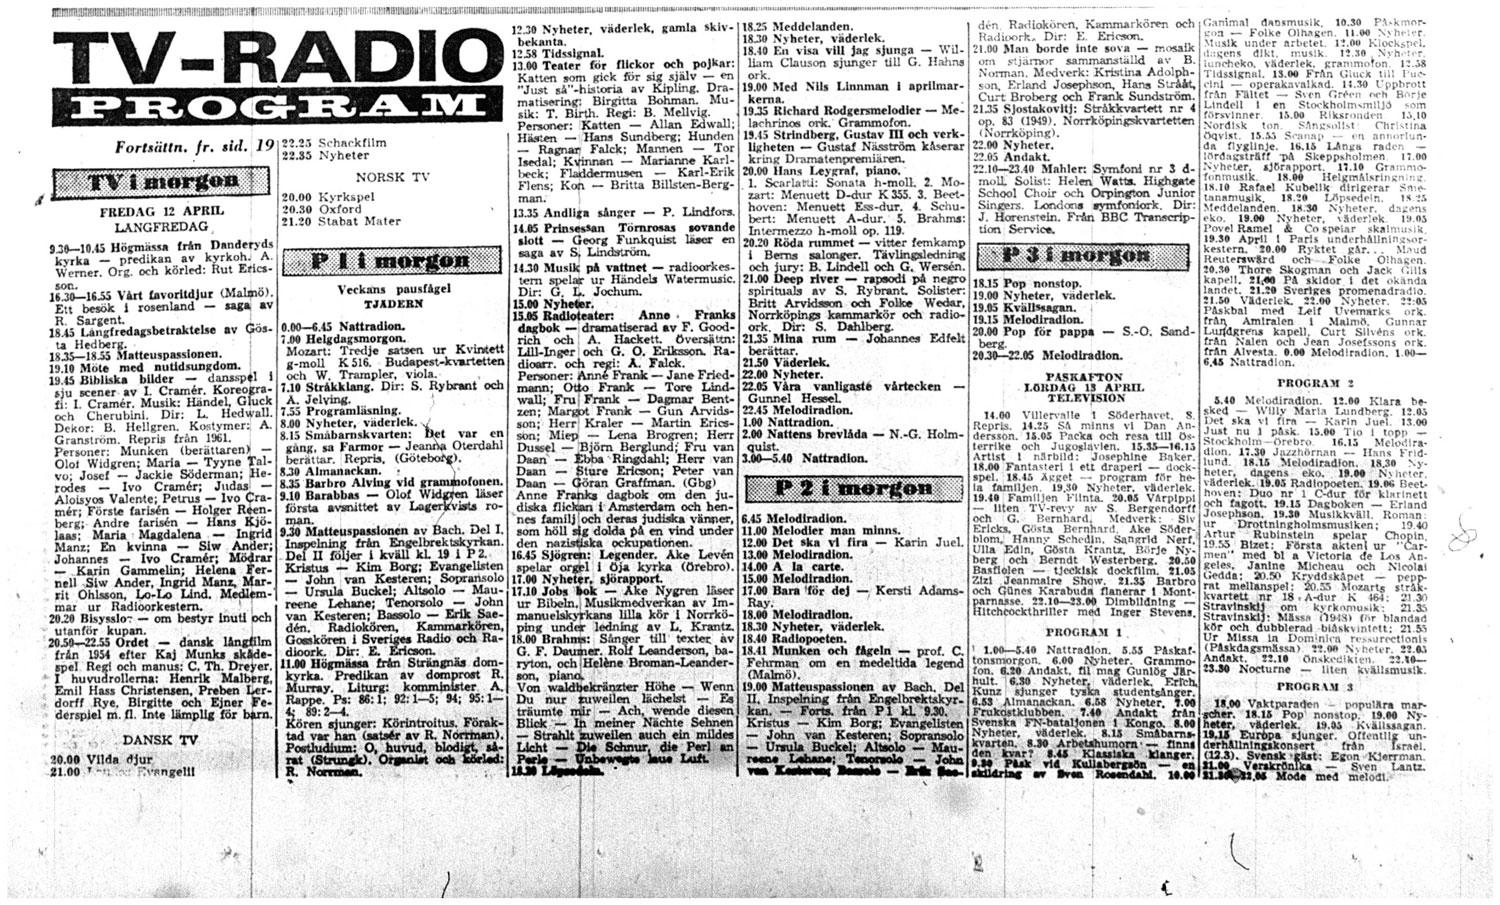 Tv- och radiotablån för långfredagen 1963.